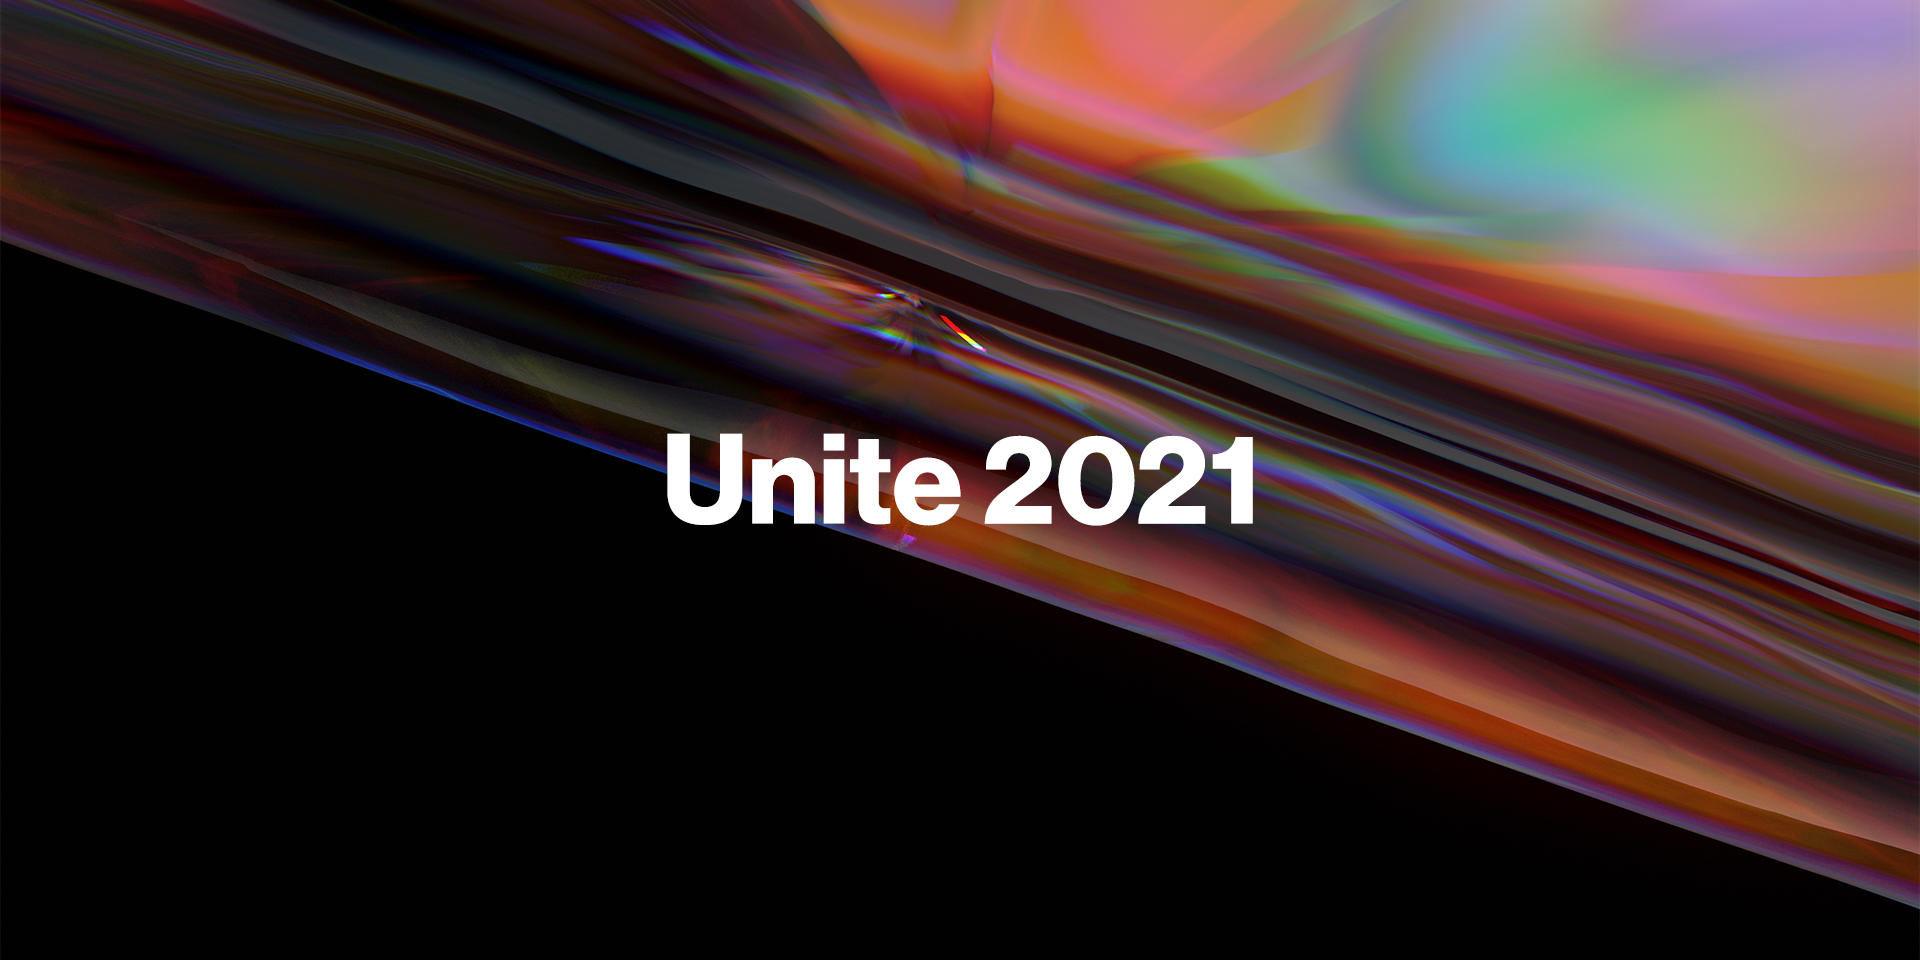 The future of Unite